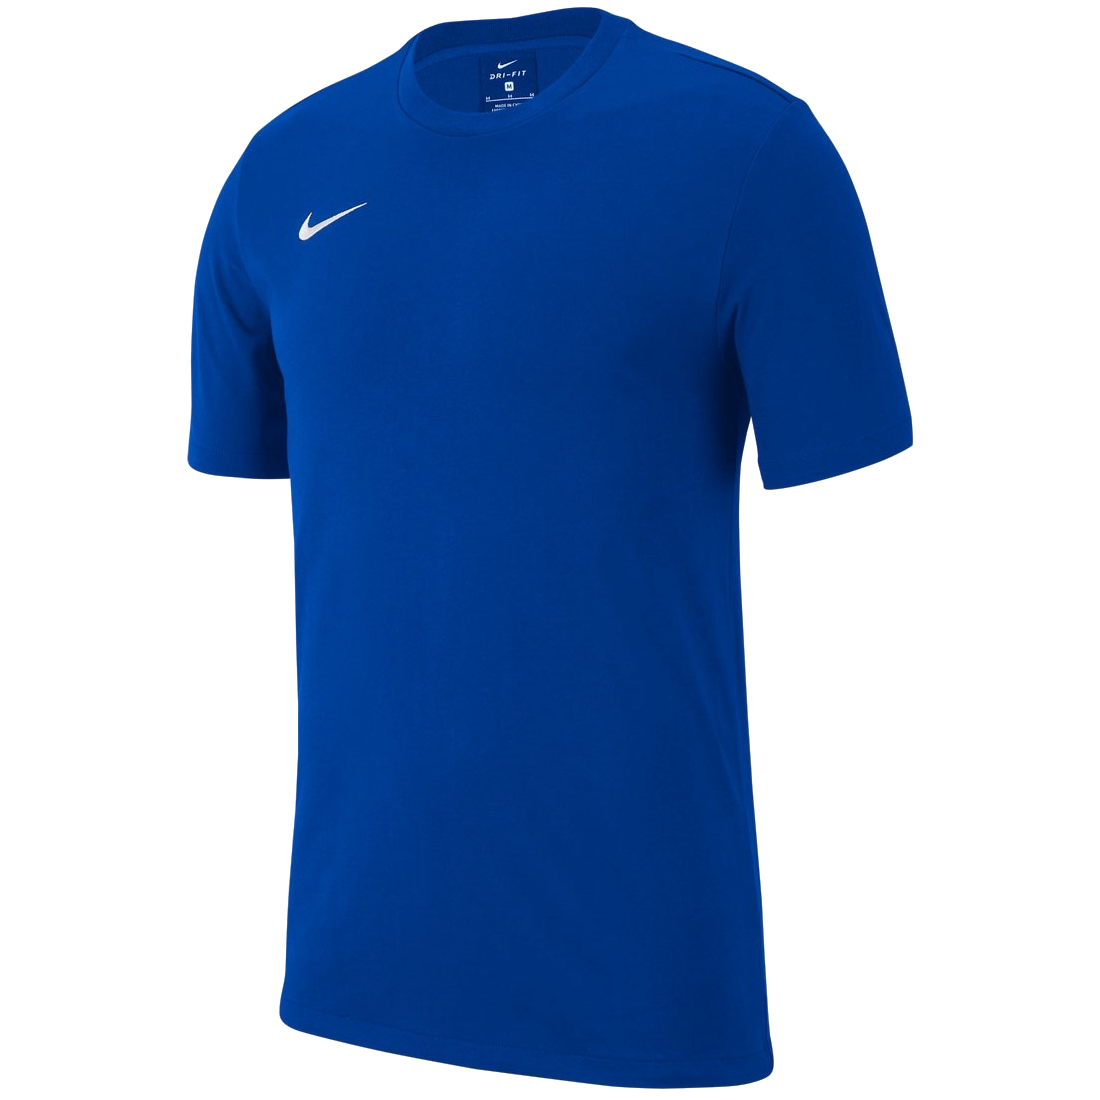 Nike Team Club 19 modrá/bílá UK Junior XL Dětské